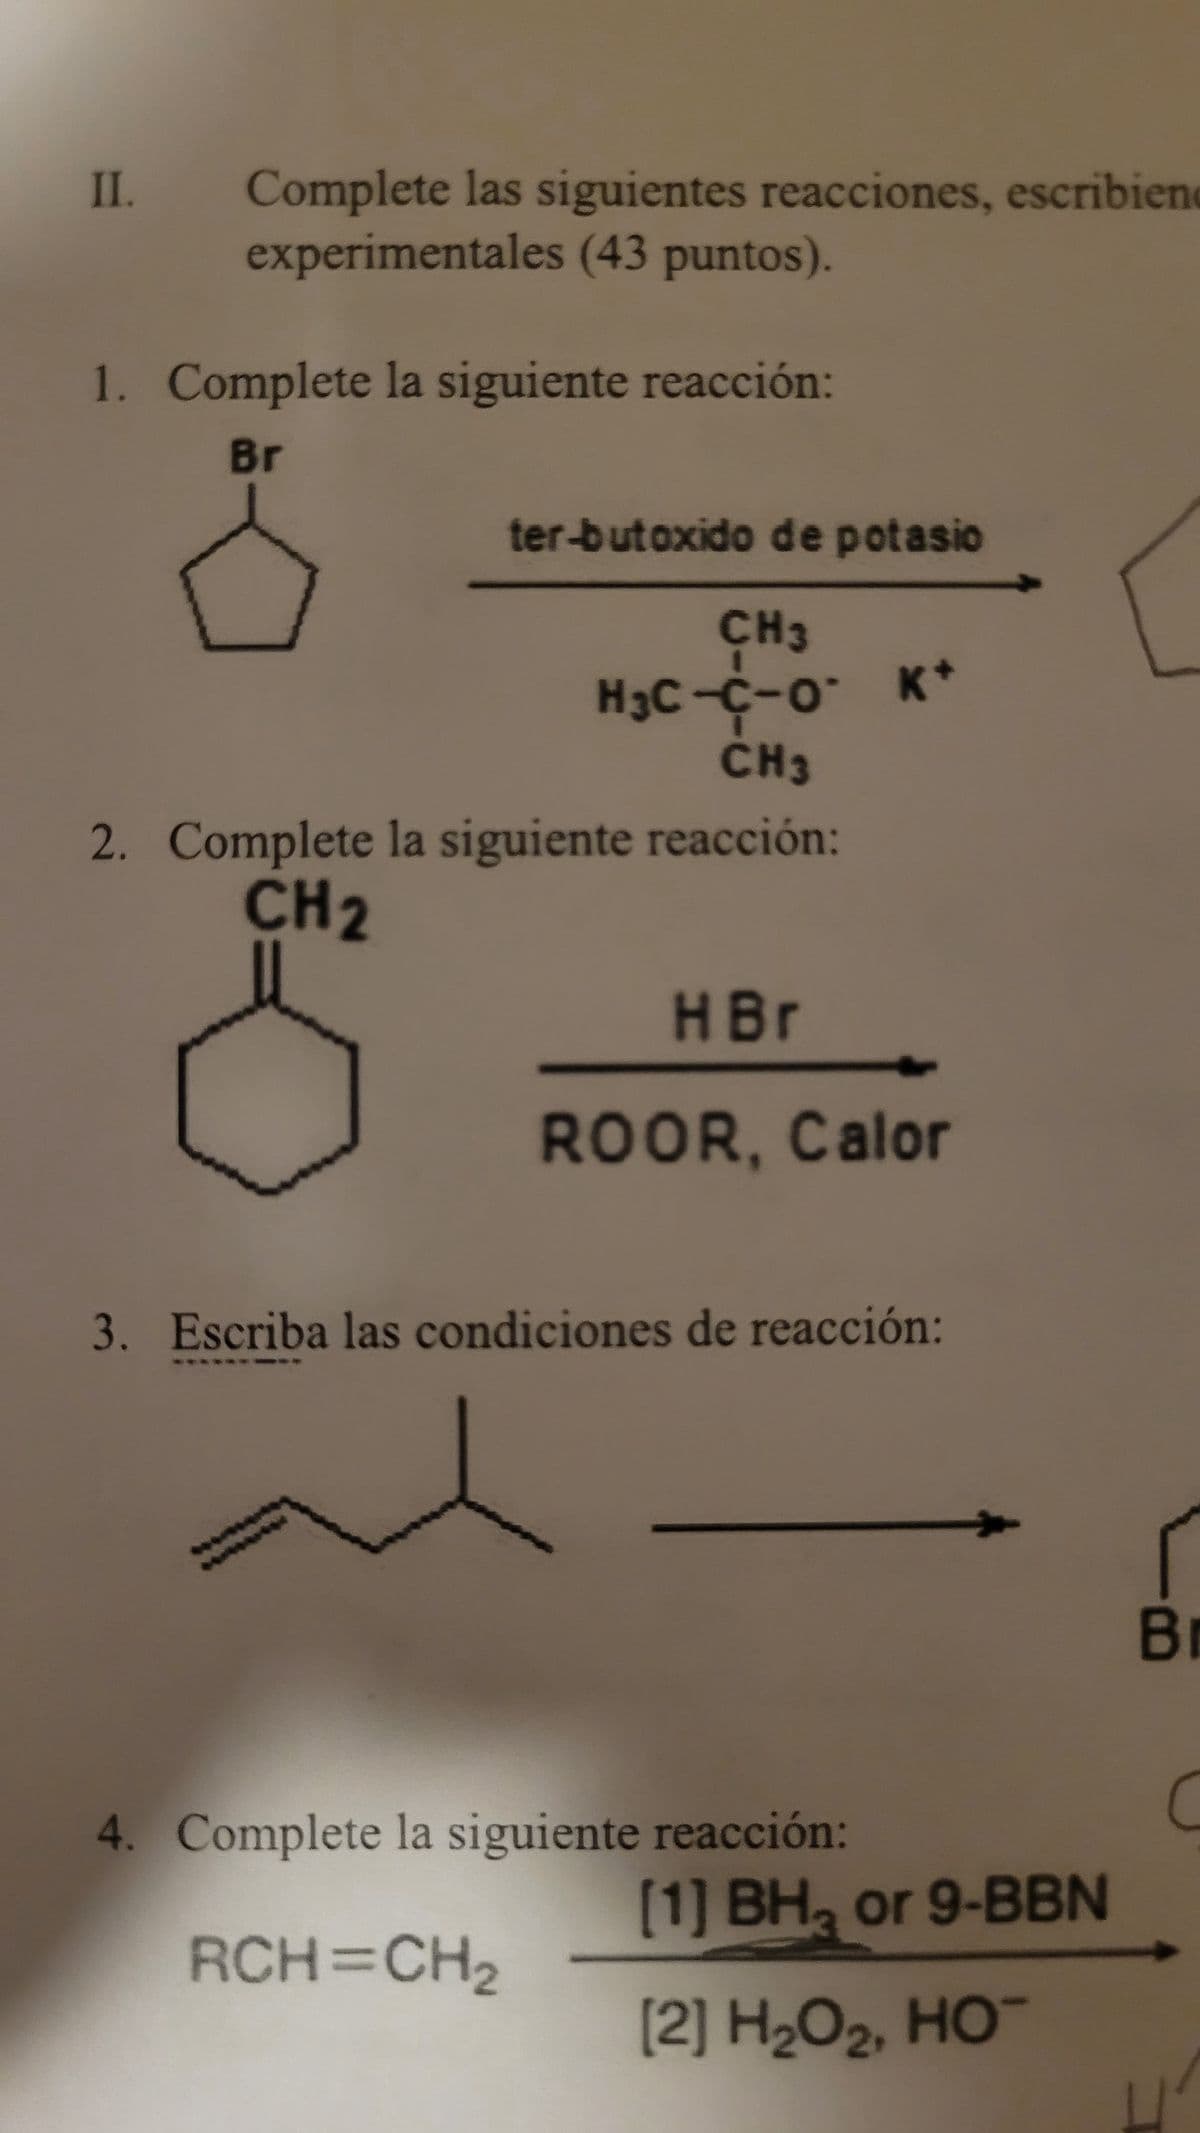 II.
Complete las siguientes reacciones, escribiene
experimentales (43 puntos).
1. Complete la siguiente reacción:
Br
ter-butoxido de potasio
CH3
H3C-C-0 K+
CH3
2. Complete la siguiente reacción:
CH2
HBr
ROOR, Calor
3. Escriba las condiciones de reacción:
Br
4. Complete la siguiente reacción:
C
[1] BH3 or 9-BBN
RCH=CH2
[2] H₂O2, HO¯